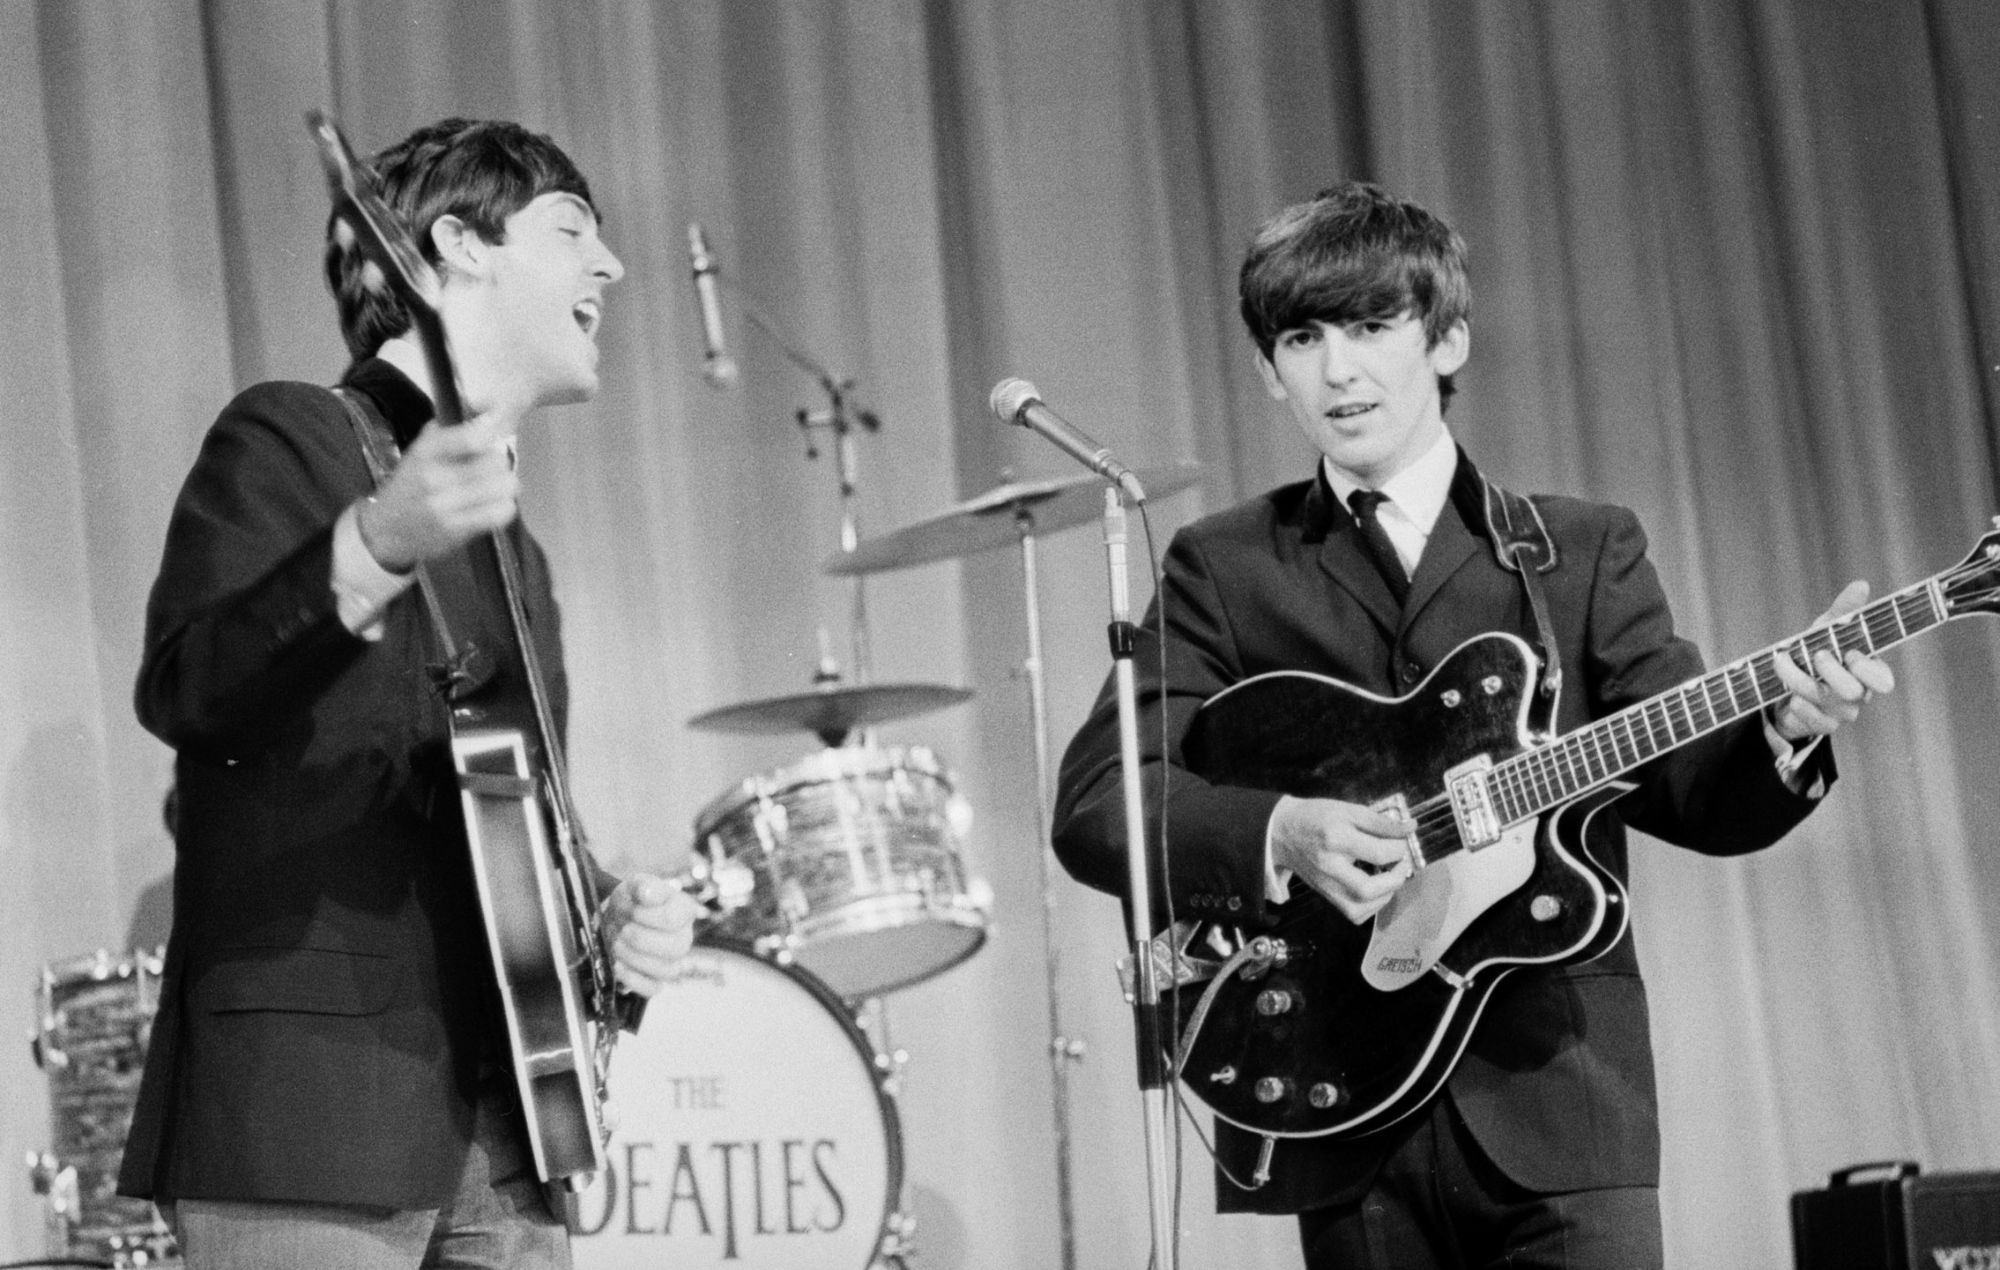 The Beatles on Sunday Night at the London Palladium in 1963